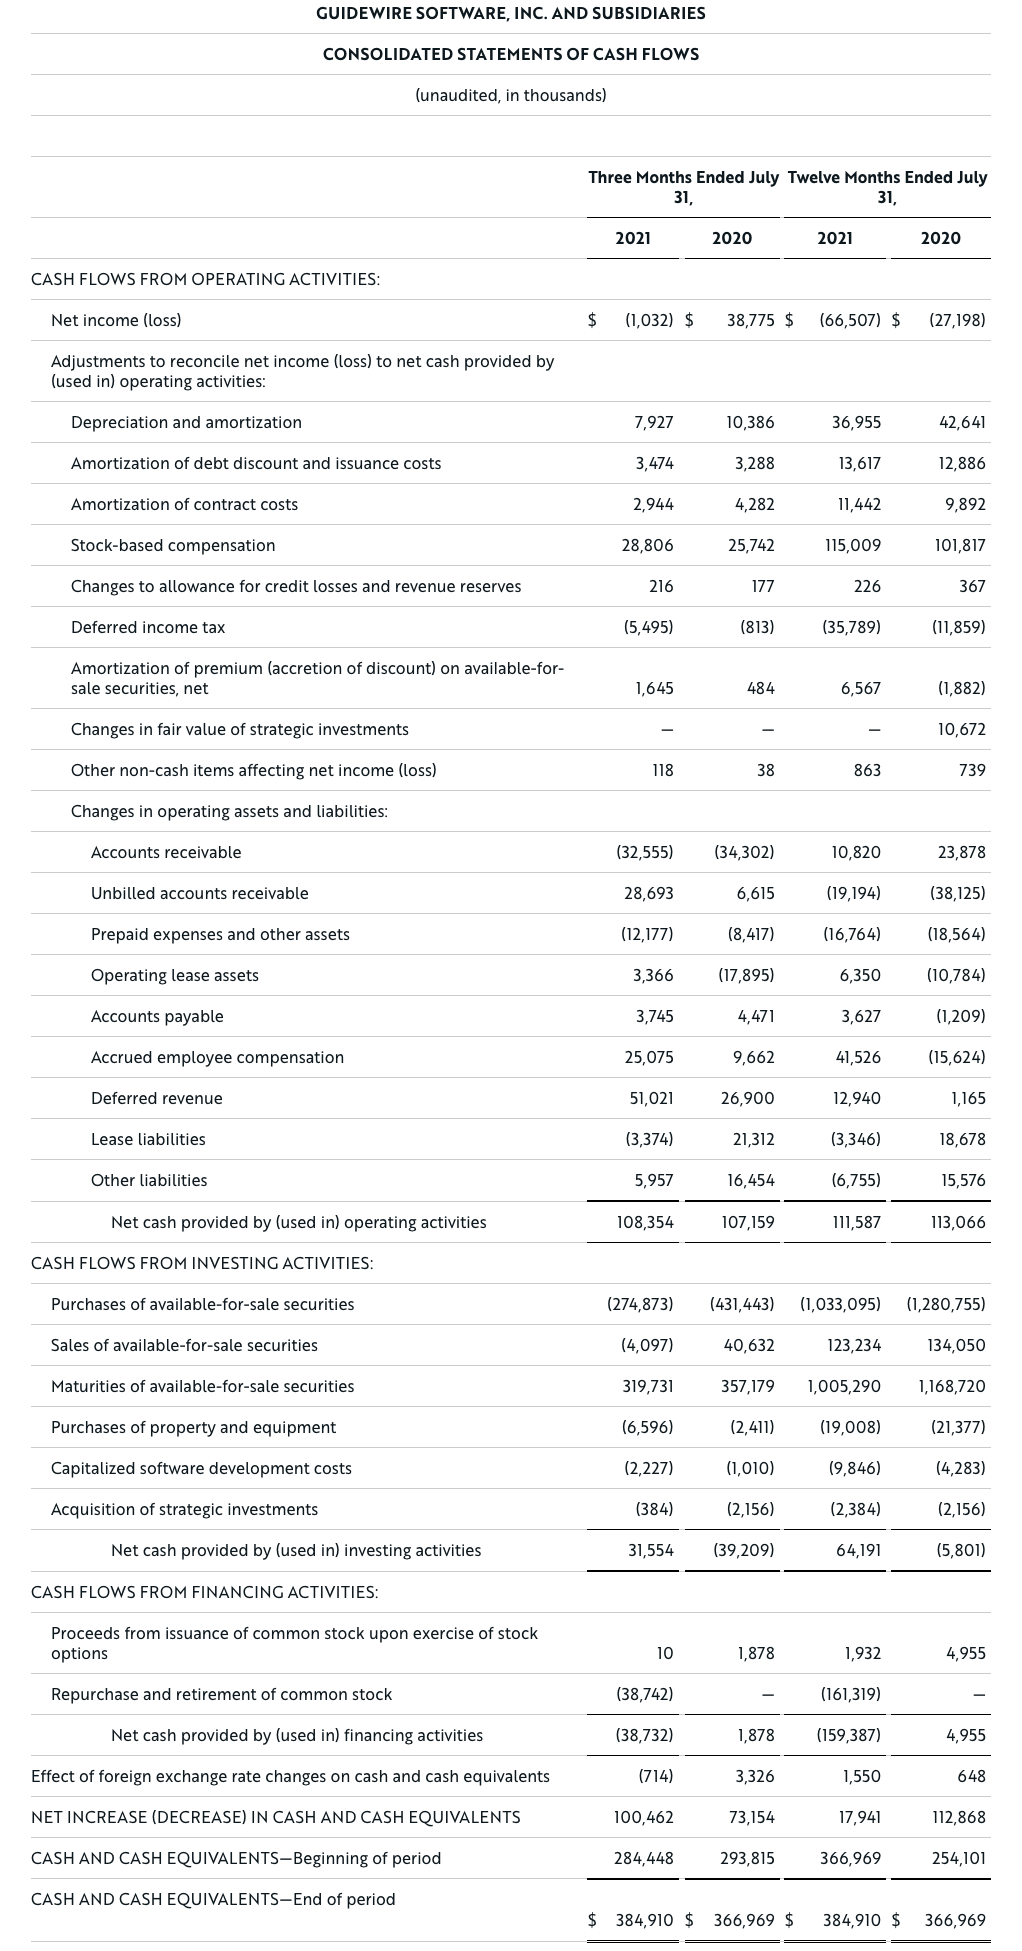 pr-20210902-earnings-table-03